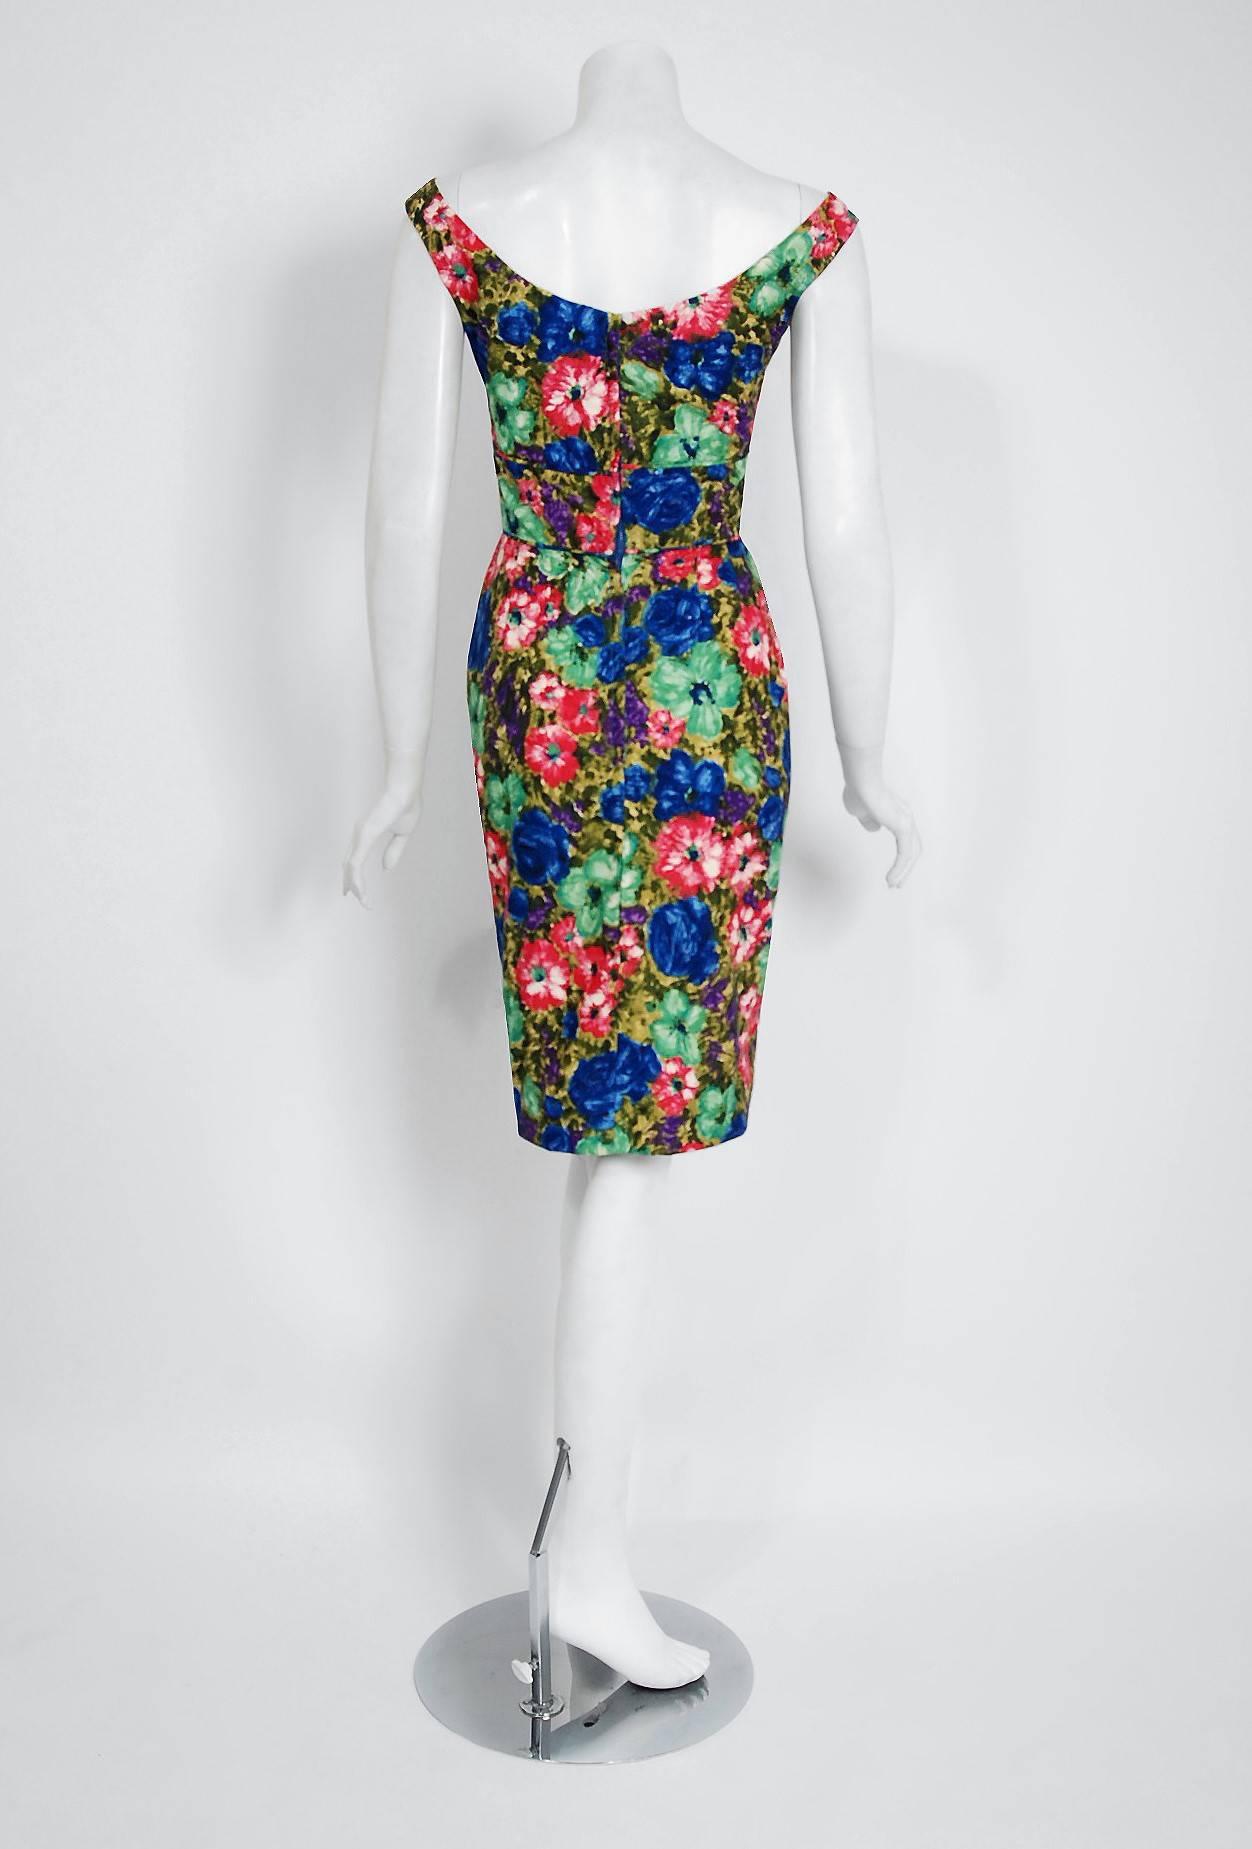 Women's 1950's Ceil Chapman Watercolor Rose Floral Print Cotton Shelf-Bust Wiggle Dress